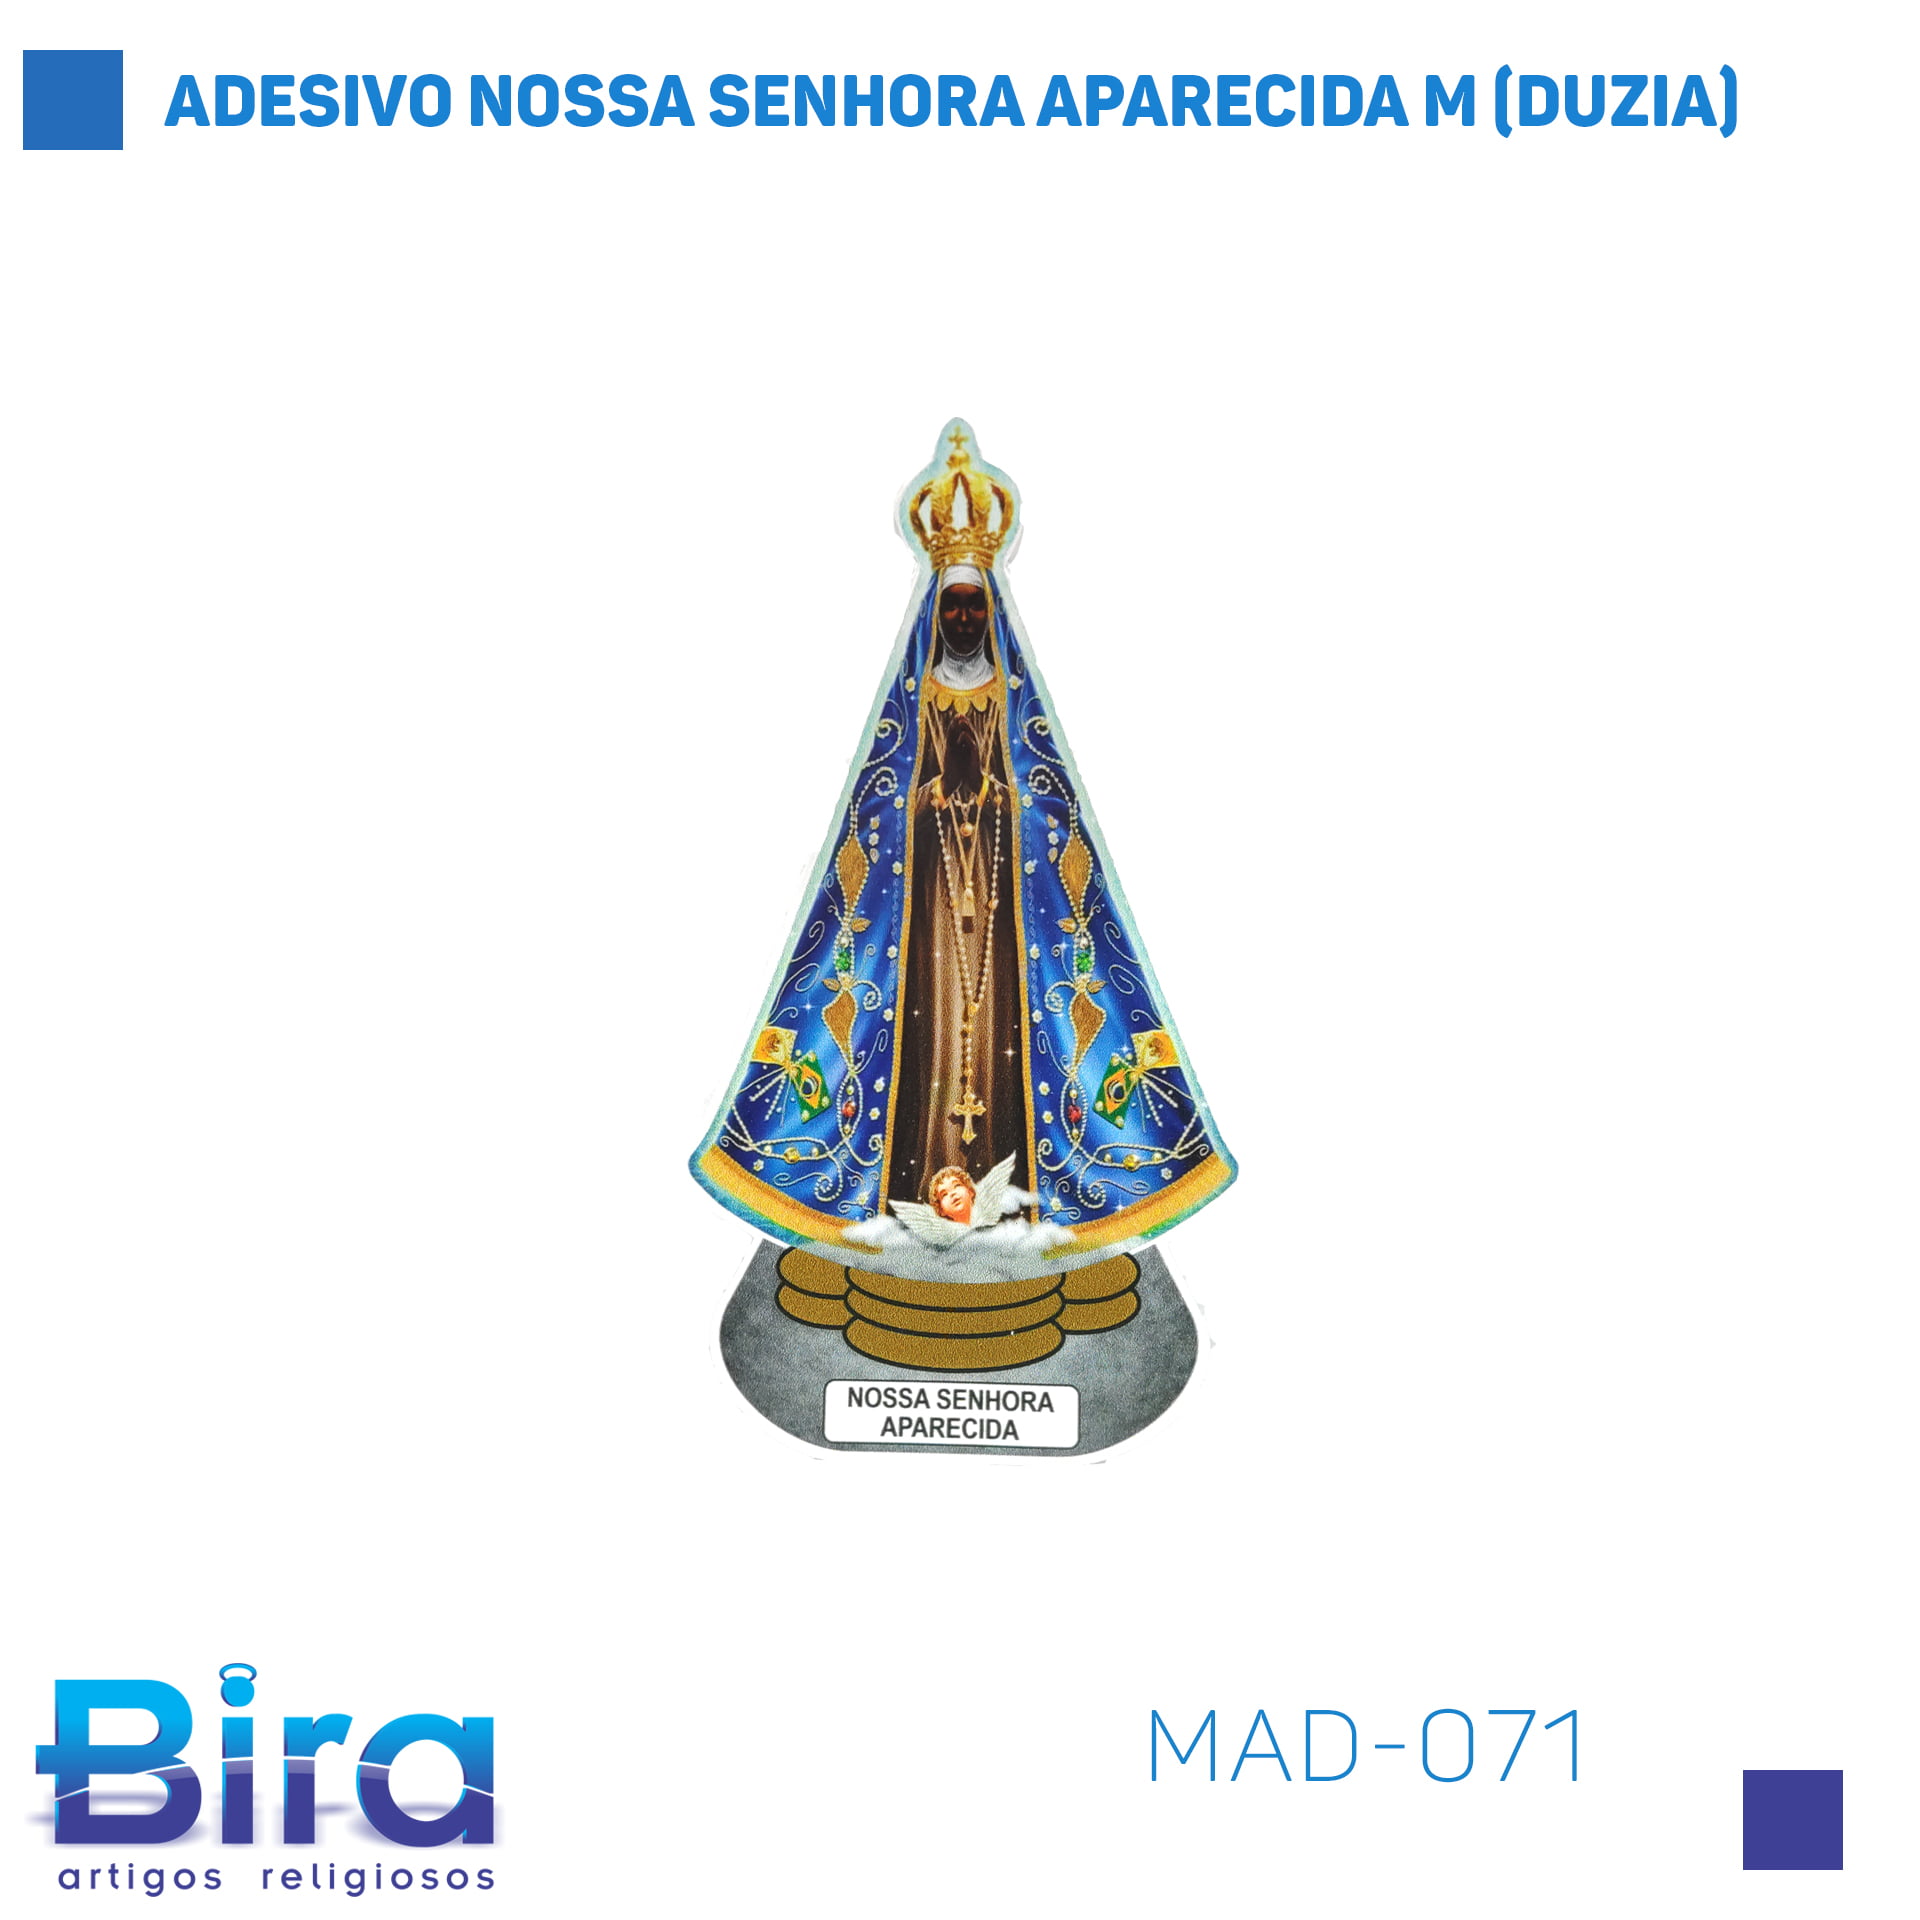 Bira Artigos Religiosos - ADESIVO NOSSA SENHORA APARECIDA M (DUZIA) - Cód. MAD-071